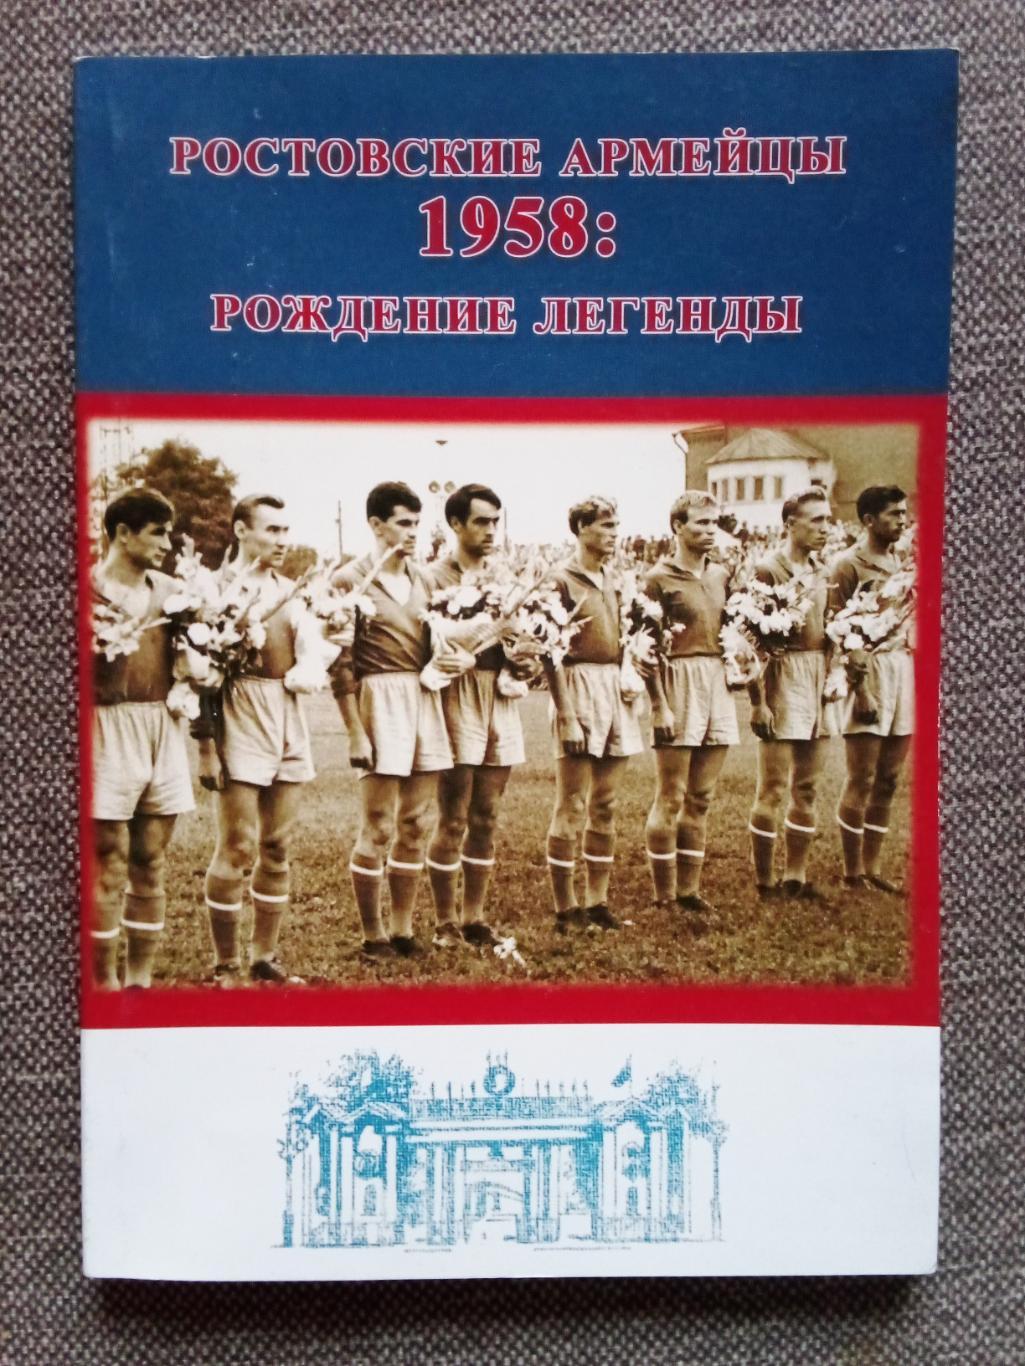 Футбол : Ростовские армейцы 1958 г. Рождение легенды (2019 г.) СКА (Ростов)